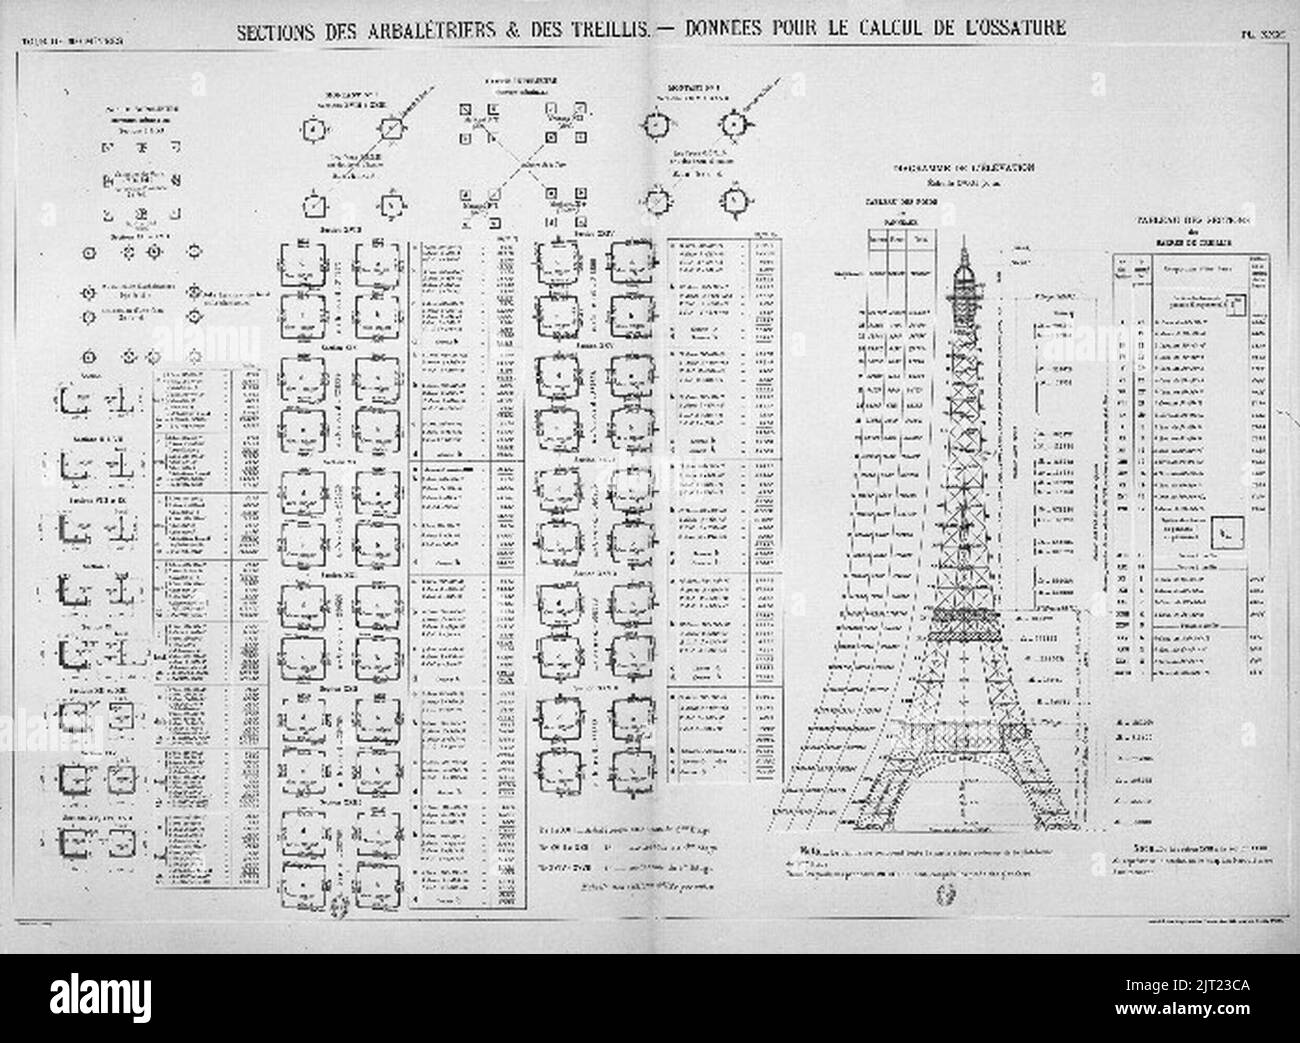 Tour Eiffel Arbalétrières et treillis pour le calcul de l'ossature. Stock Photo